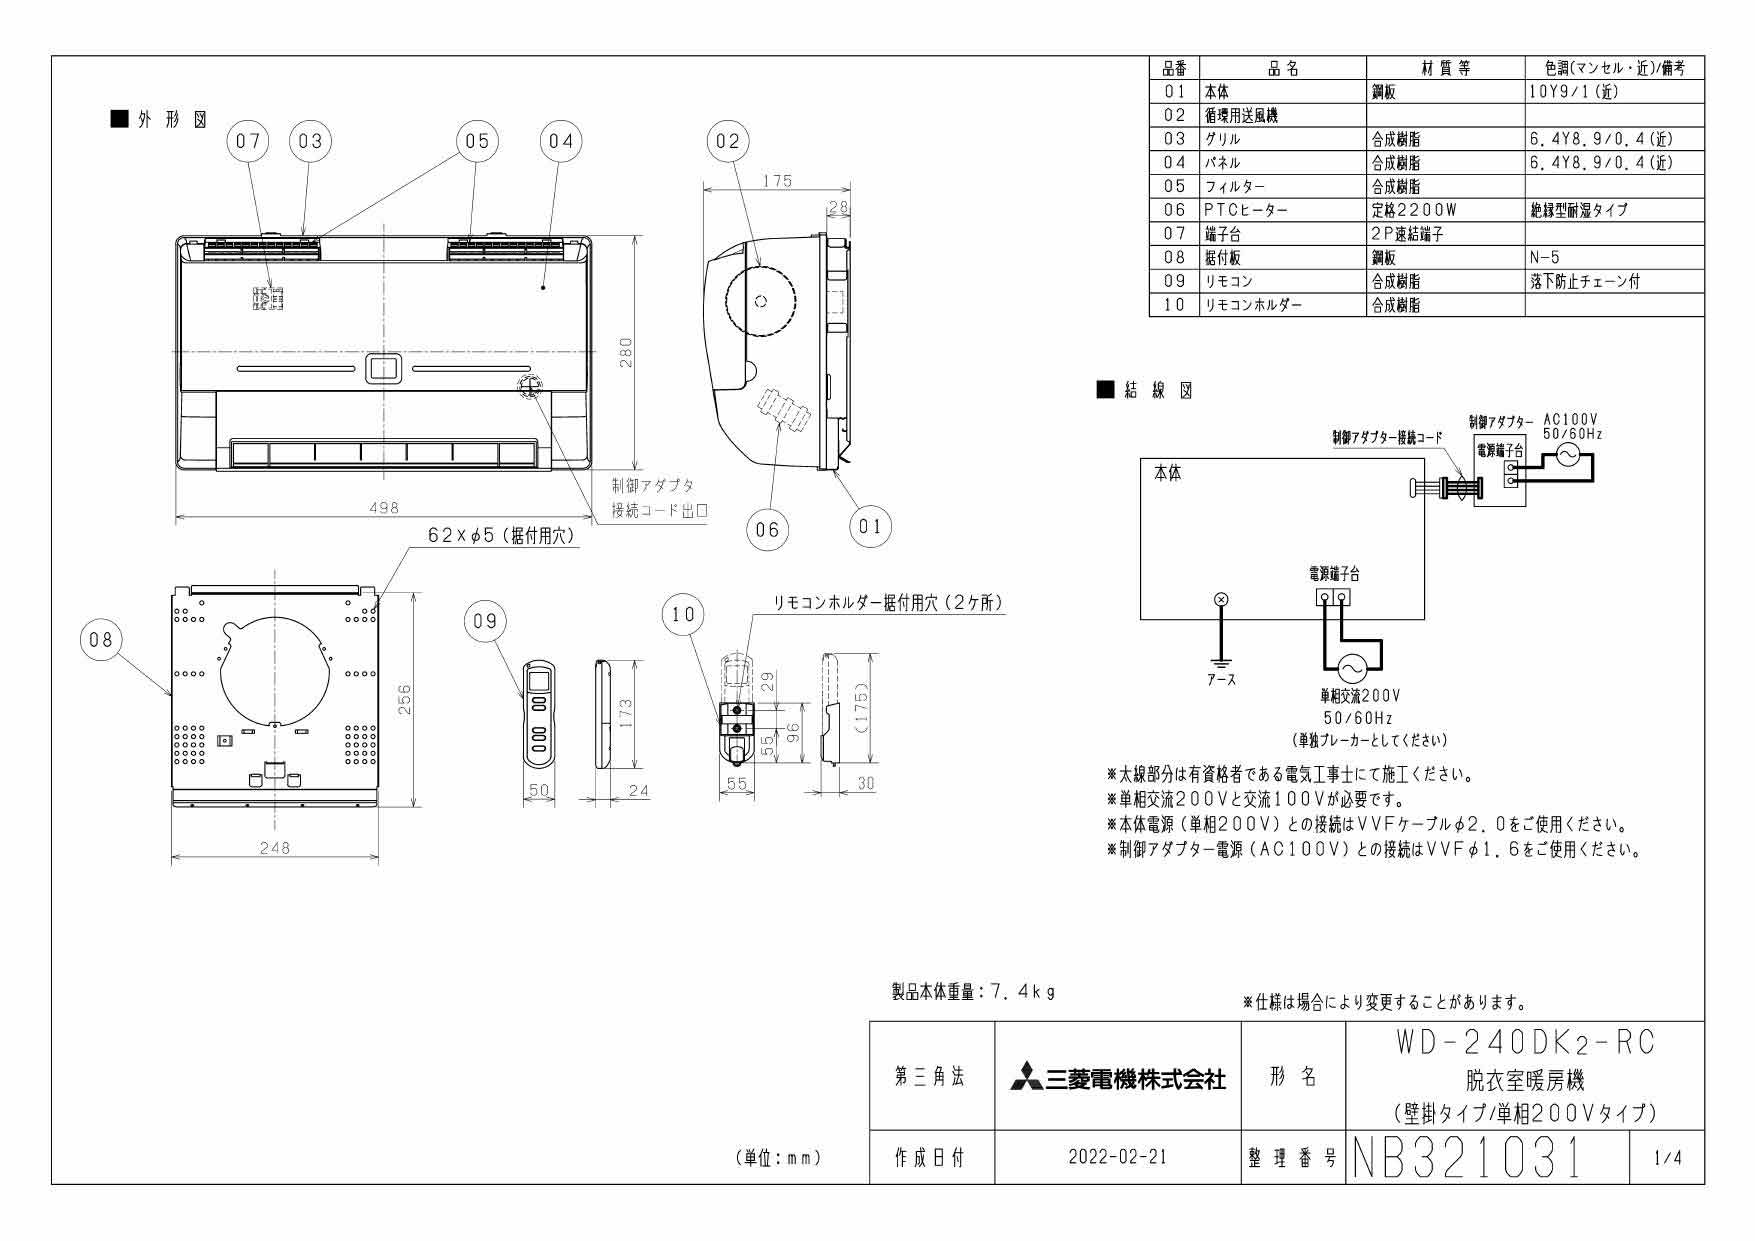 MITSUBISHI WD-240DK2-RC 脱衣室暖房機(温風・壁掛) - 3